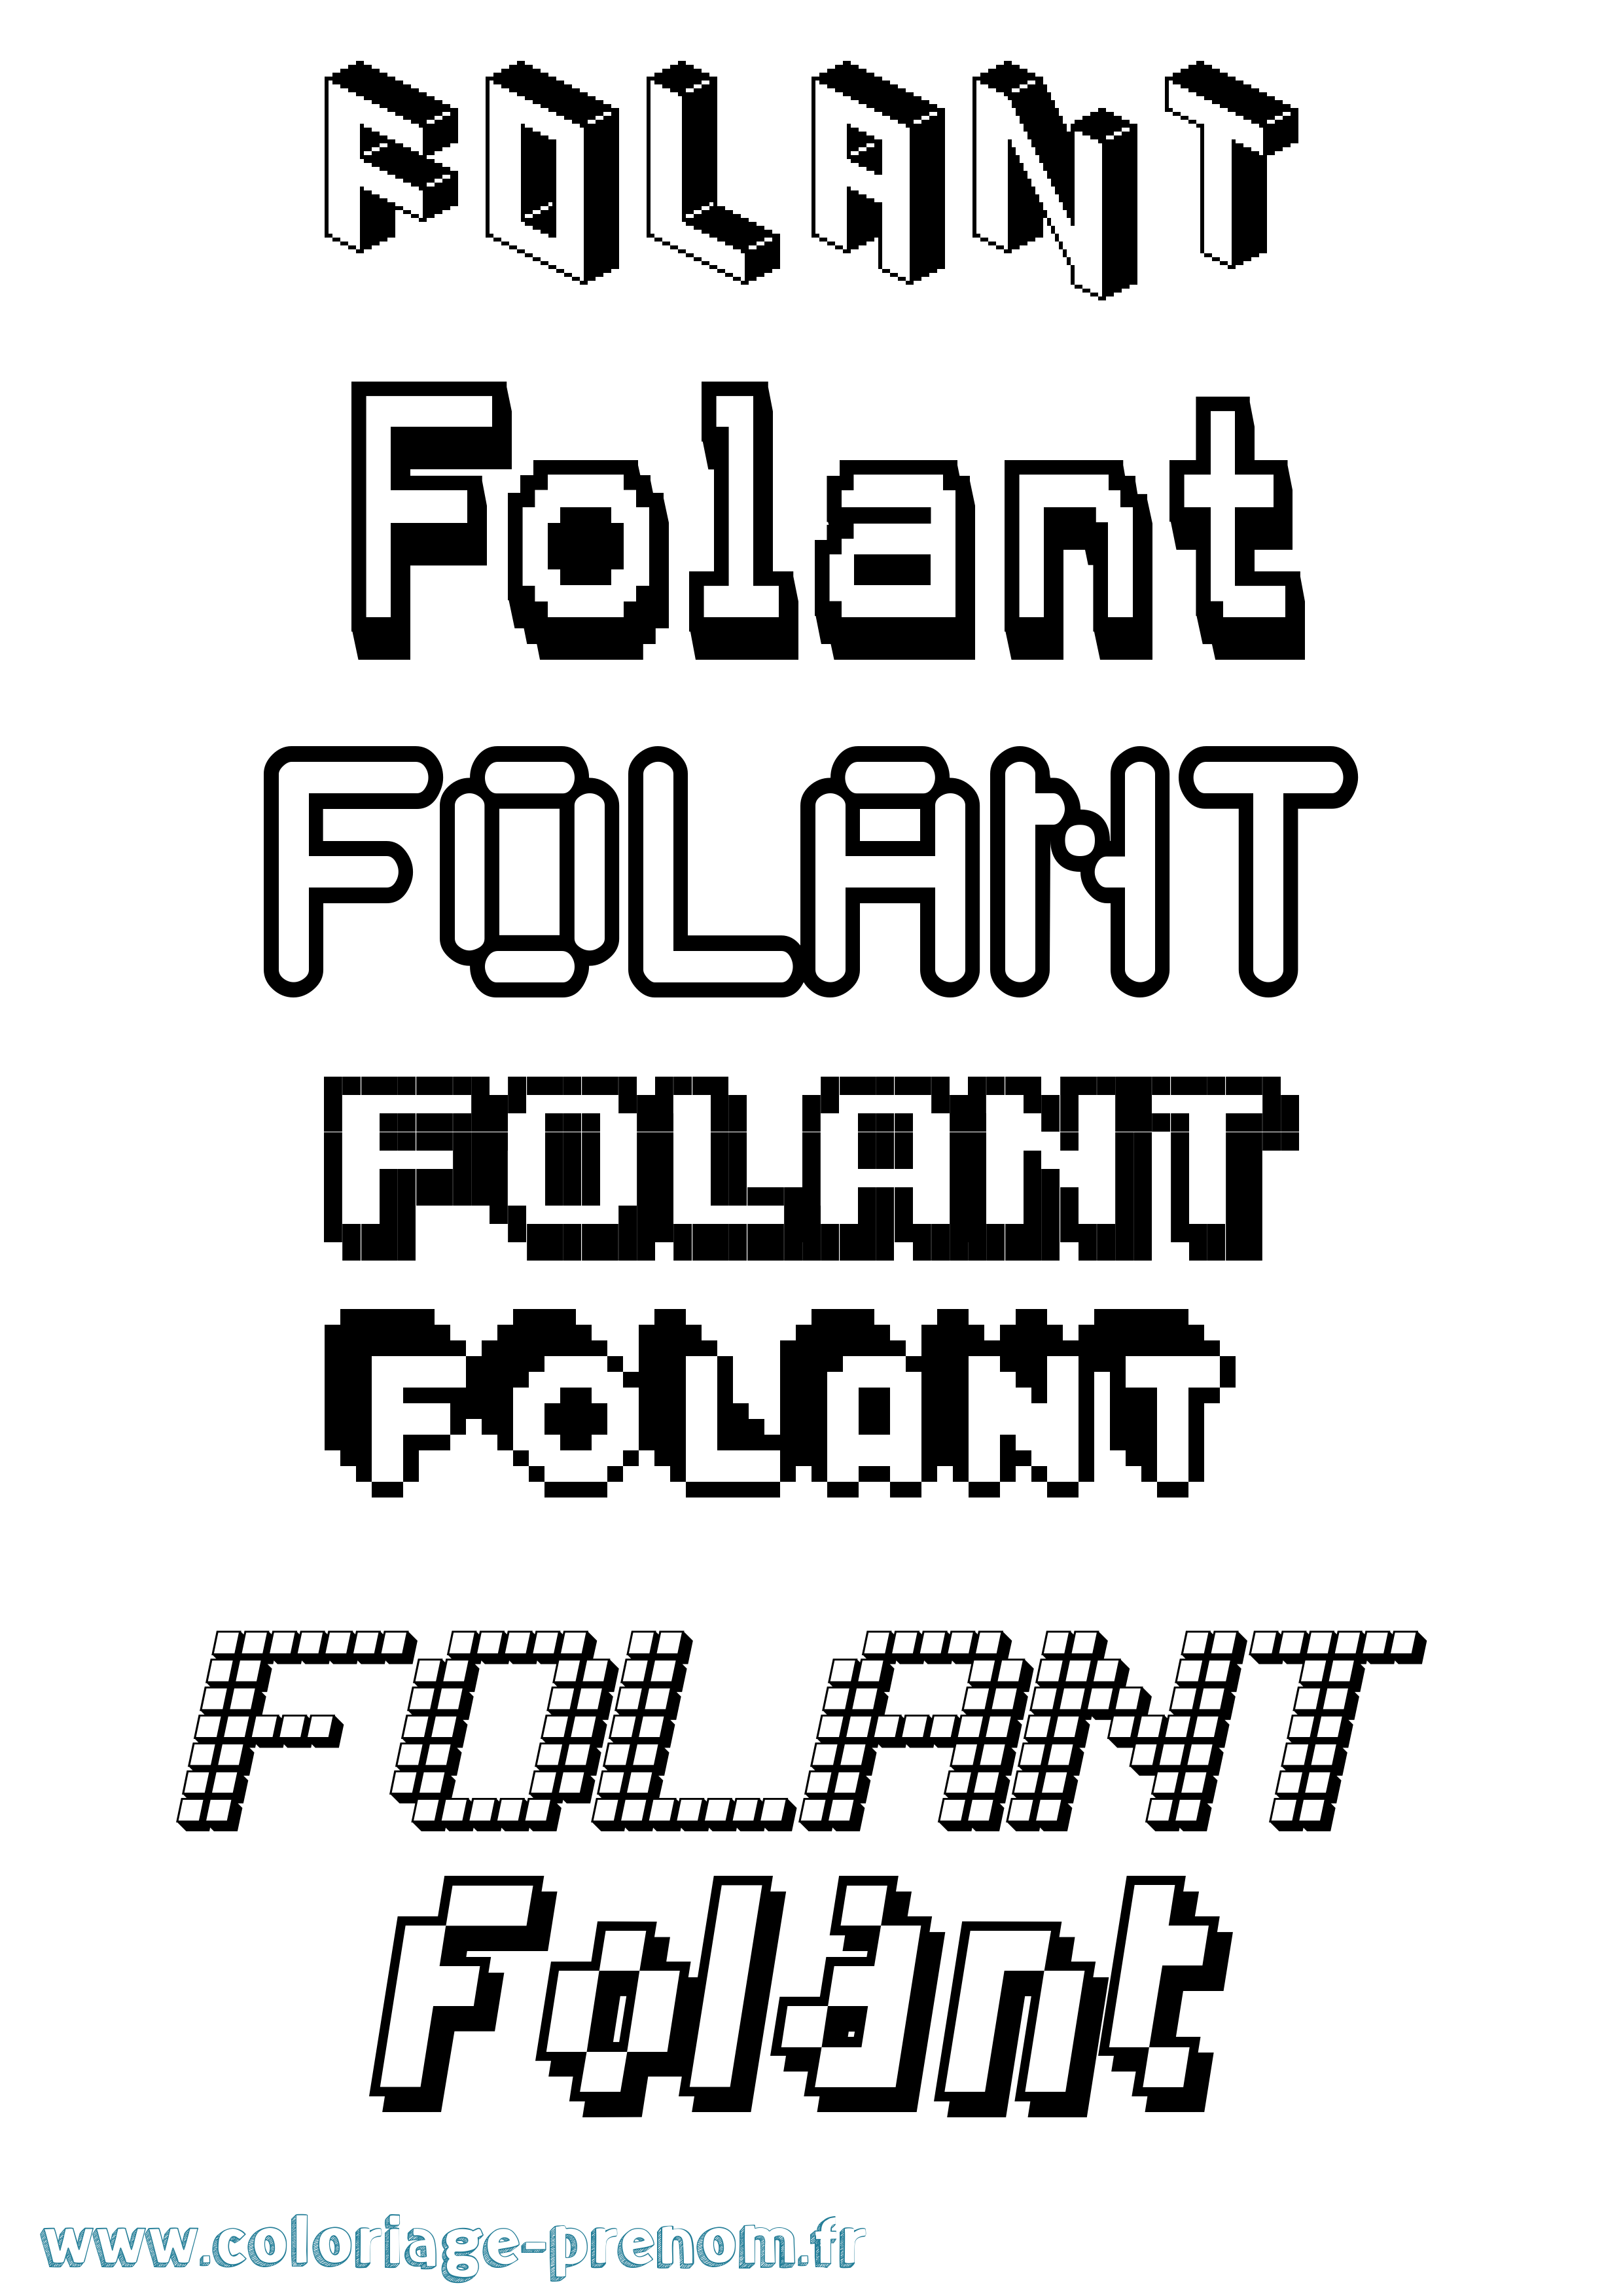 Coloriage prénom Folant Pixel